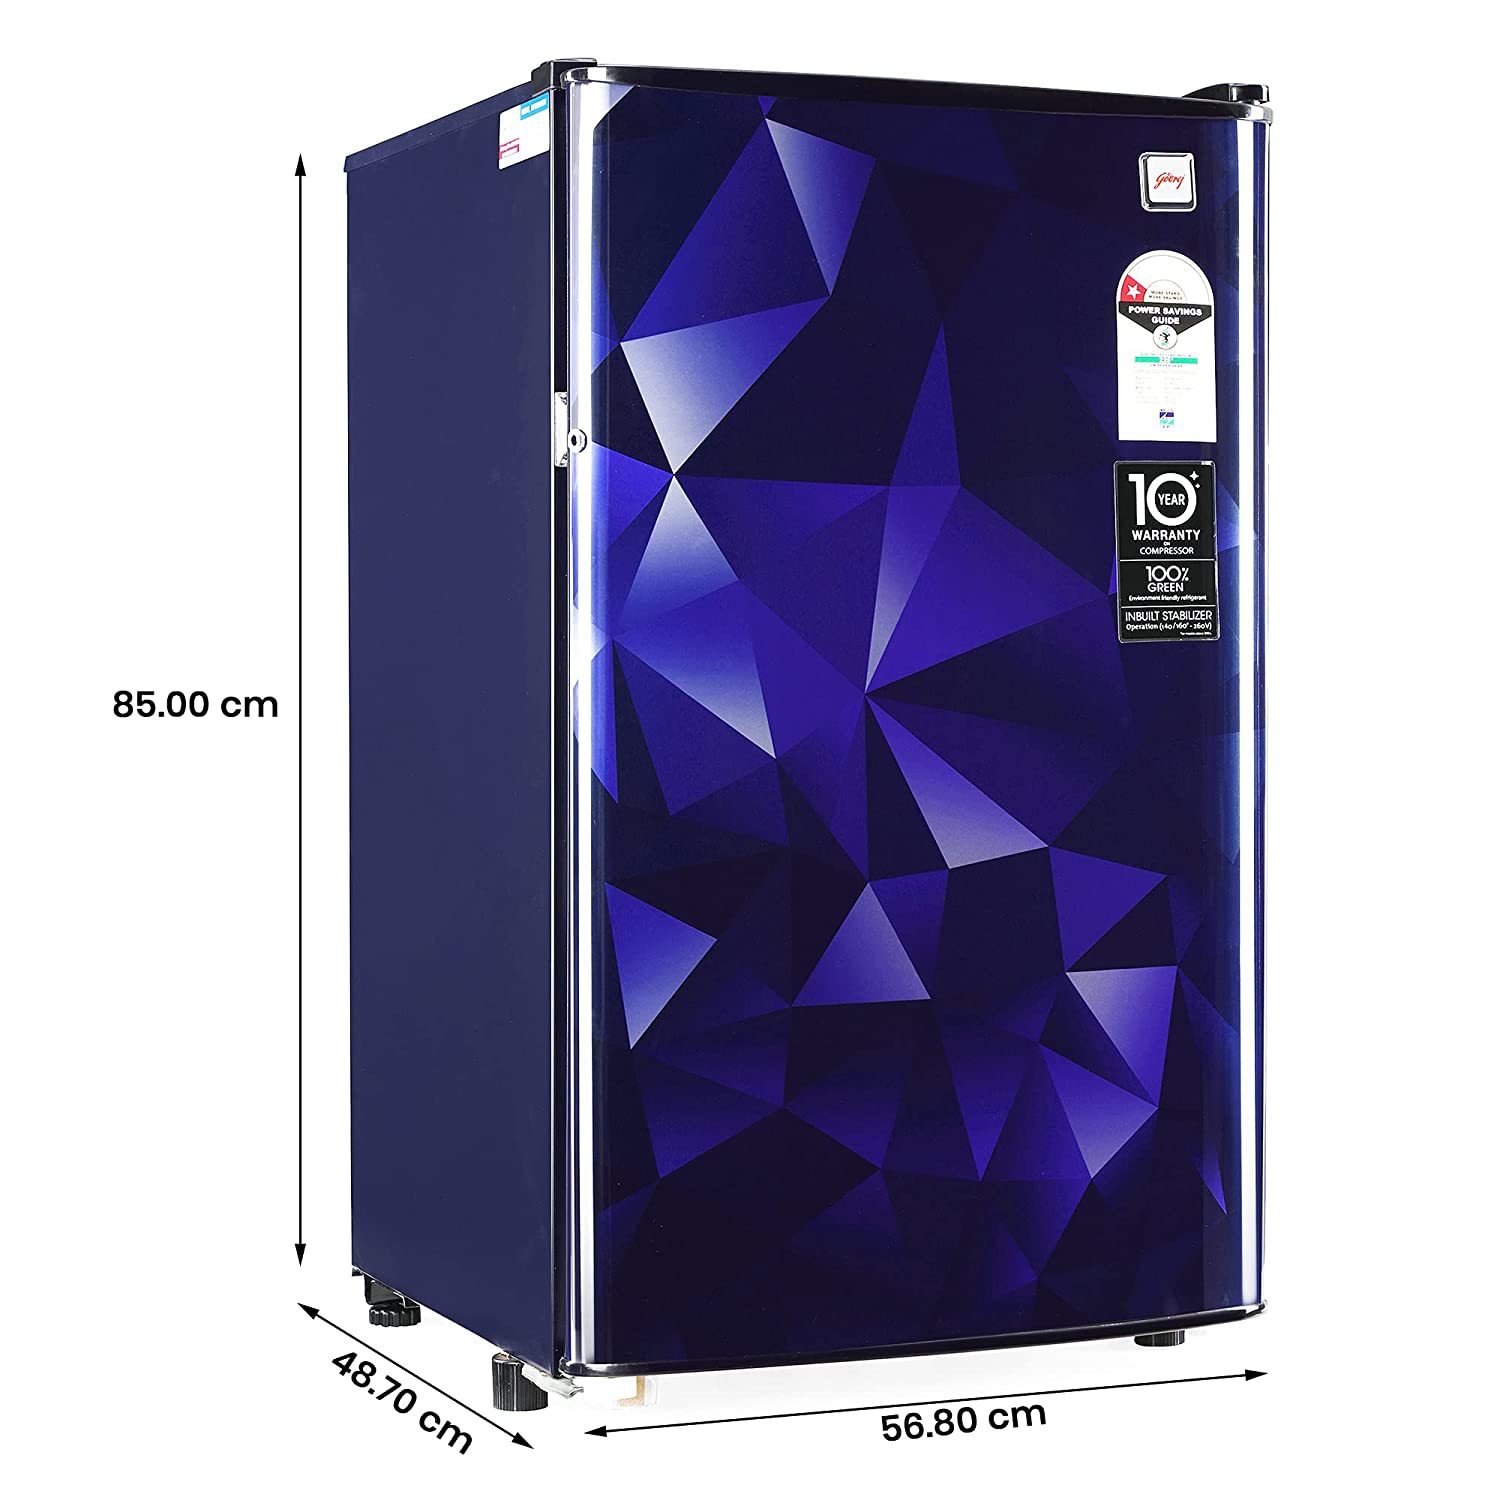 Godrej RD Champ 114 WRF 1.2 99 Ltr Single Door Refrigerator